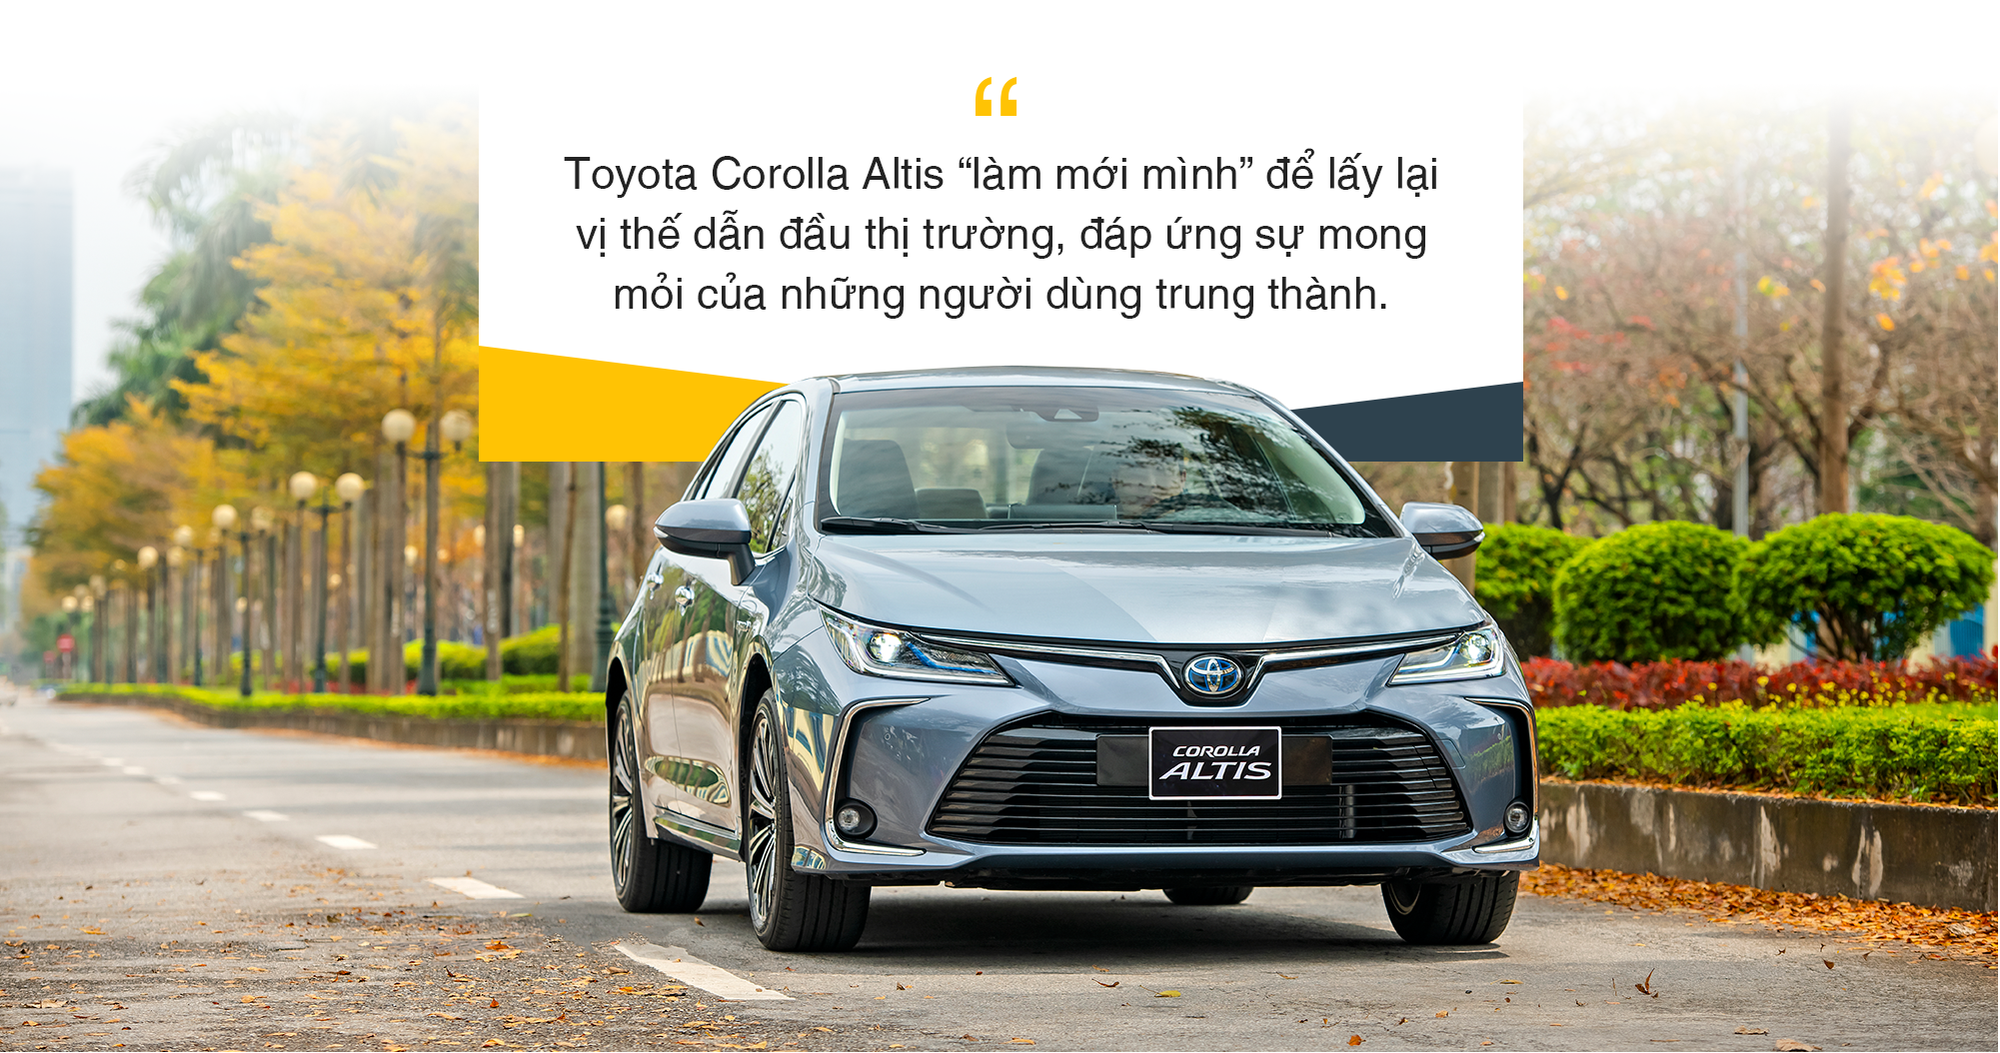 Toyota Corolla Altis – sedan đẳng cấp cho các doanh nhân trẻ thành đạt - Ảnh 6.